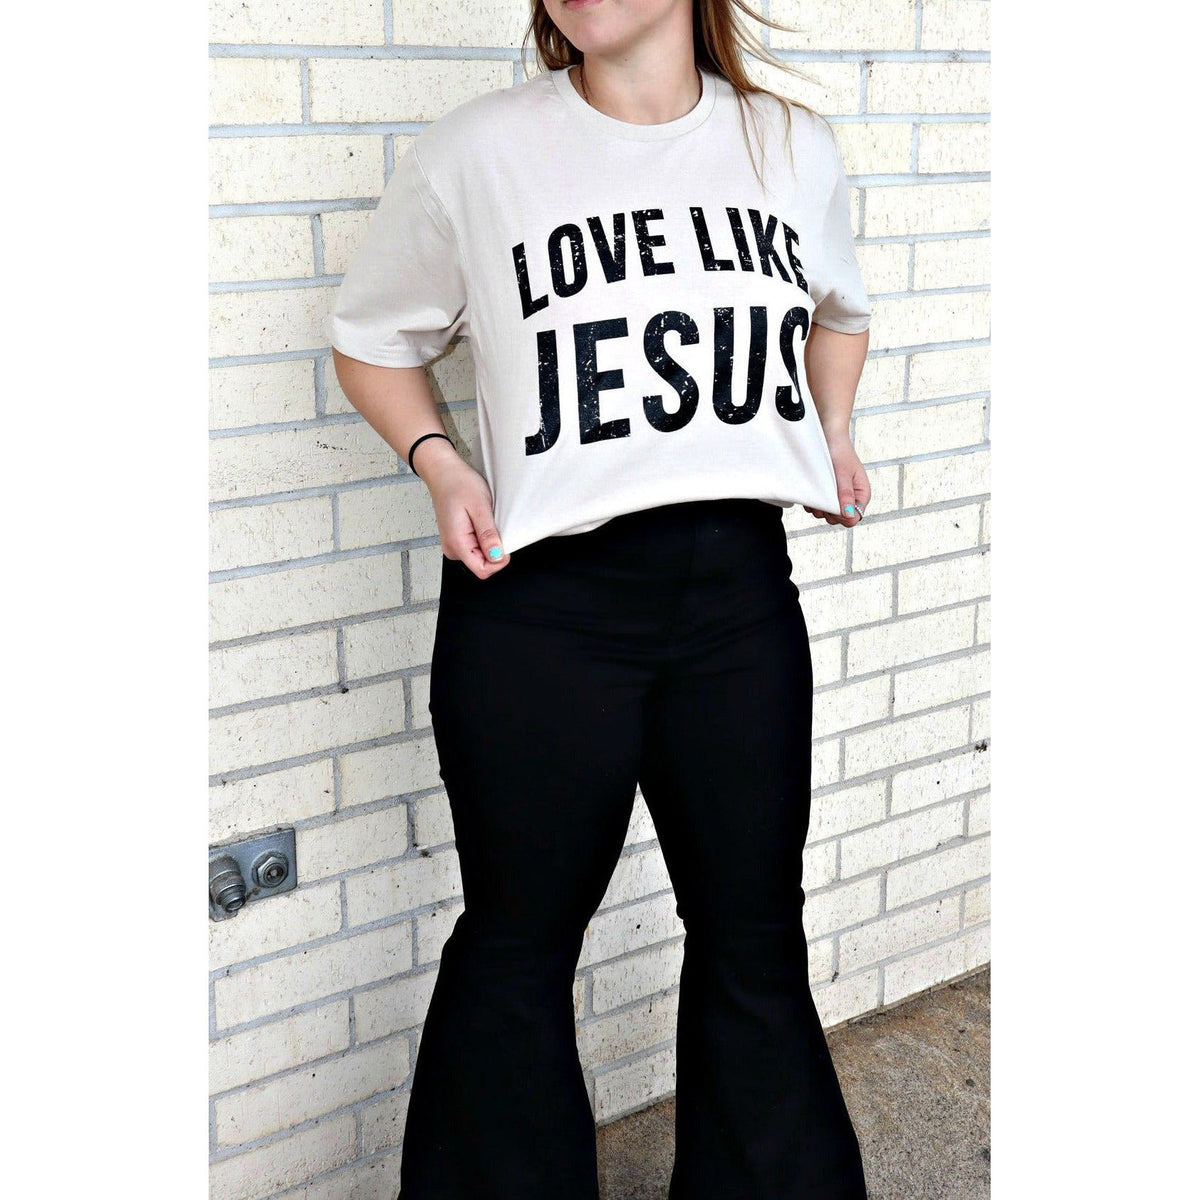 Love like Jesus tan Shirt